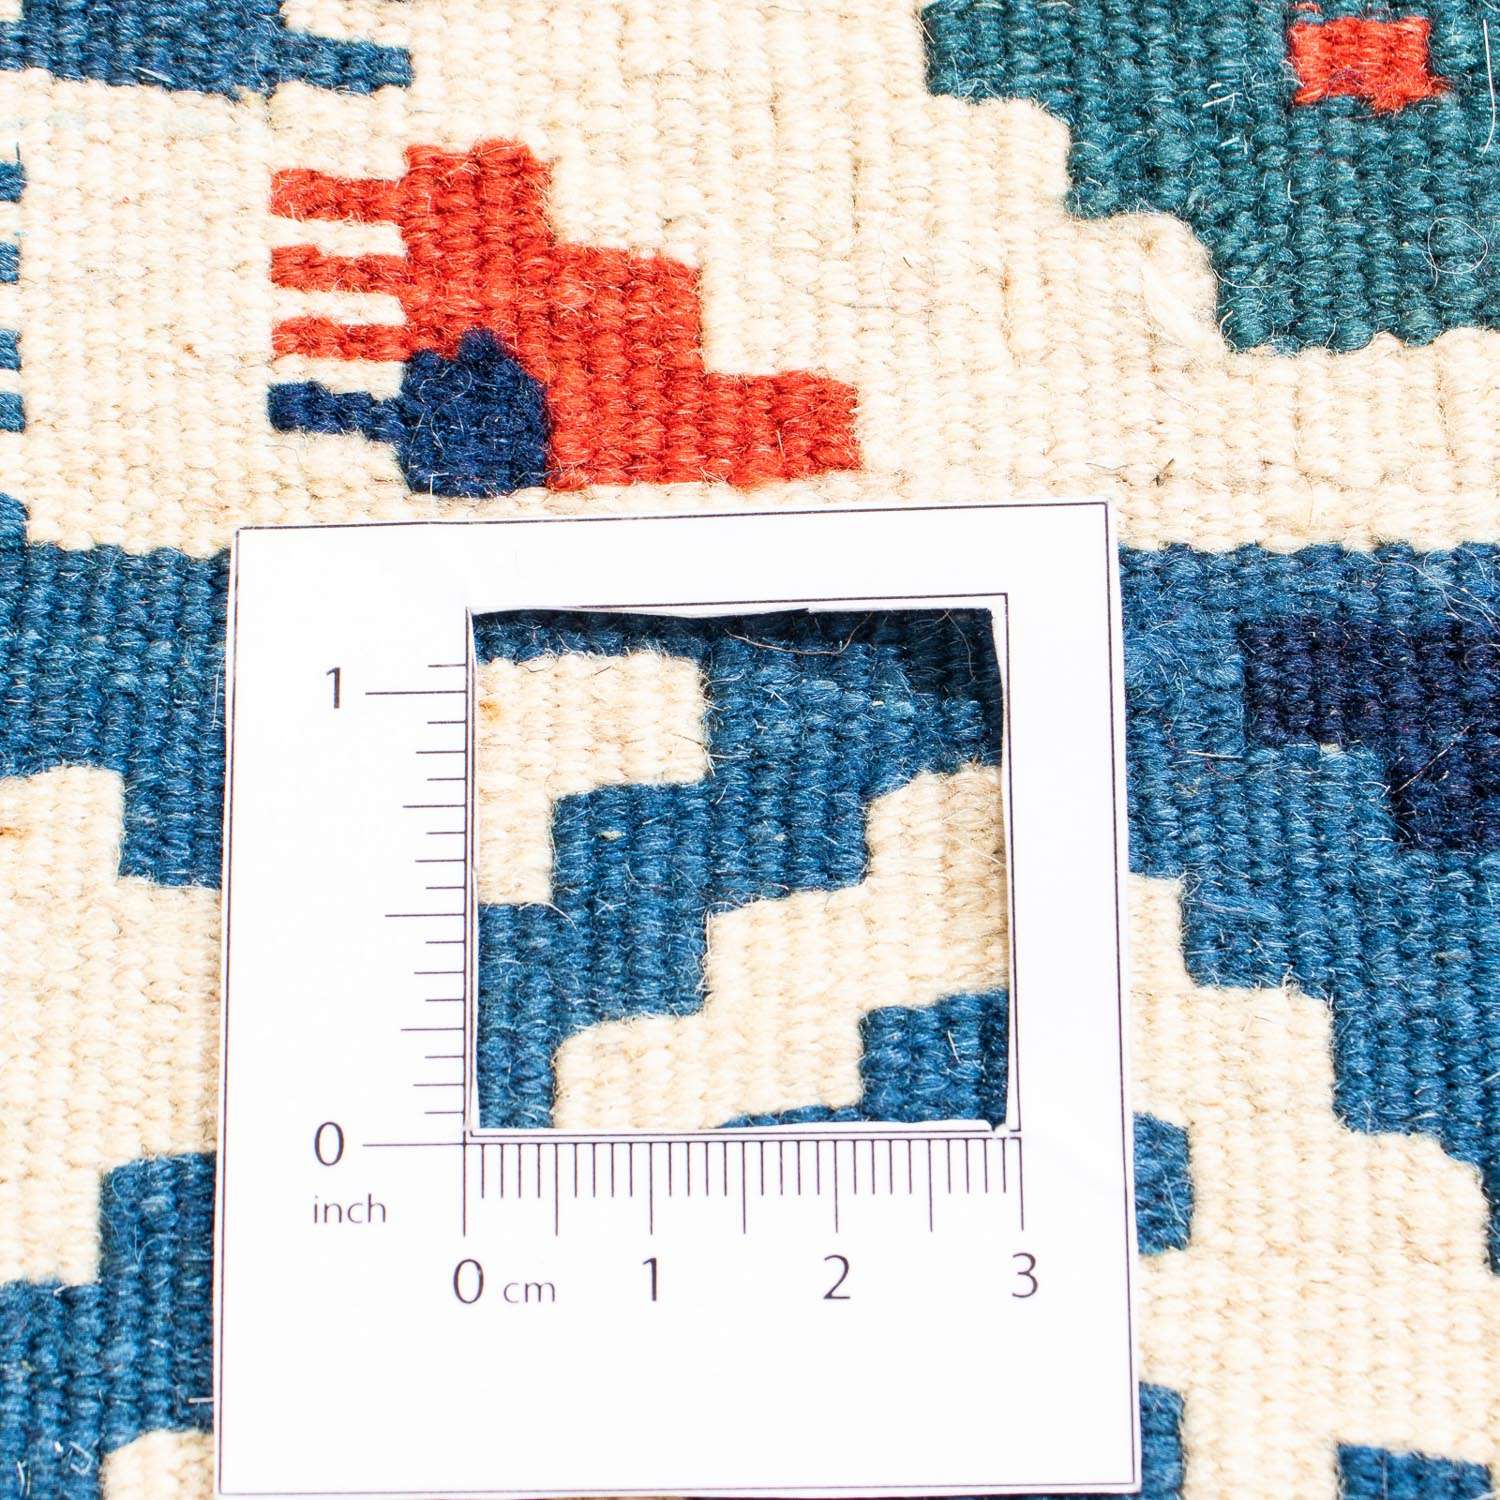 Kelimský koberec - Orientální čtvercový  - 103 x 101 cm - vícebarevné